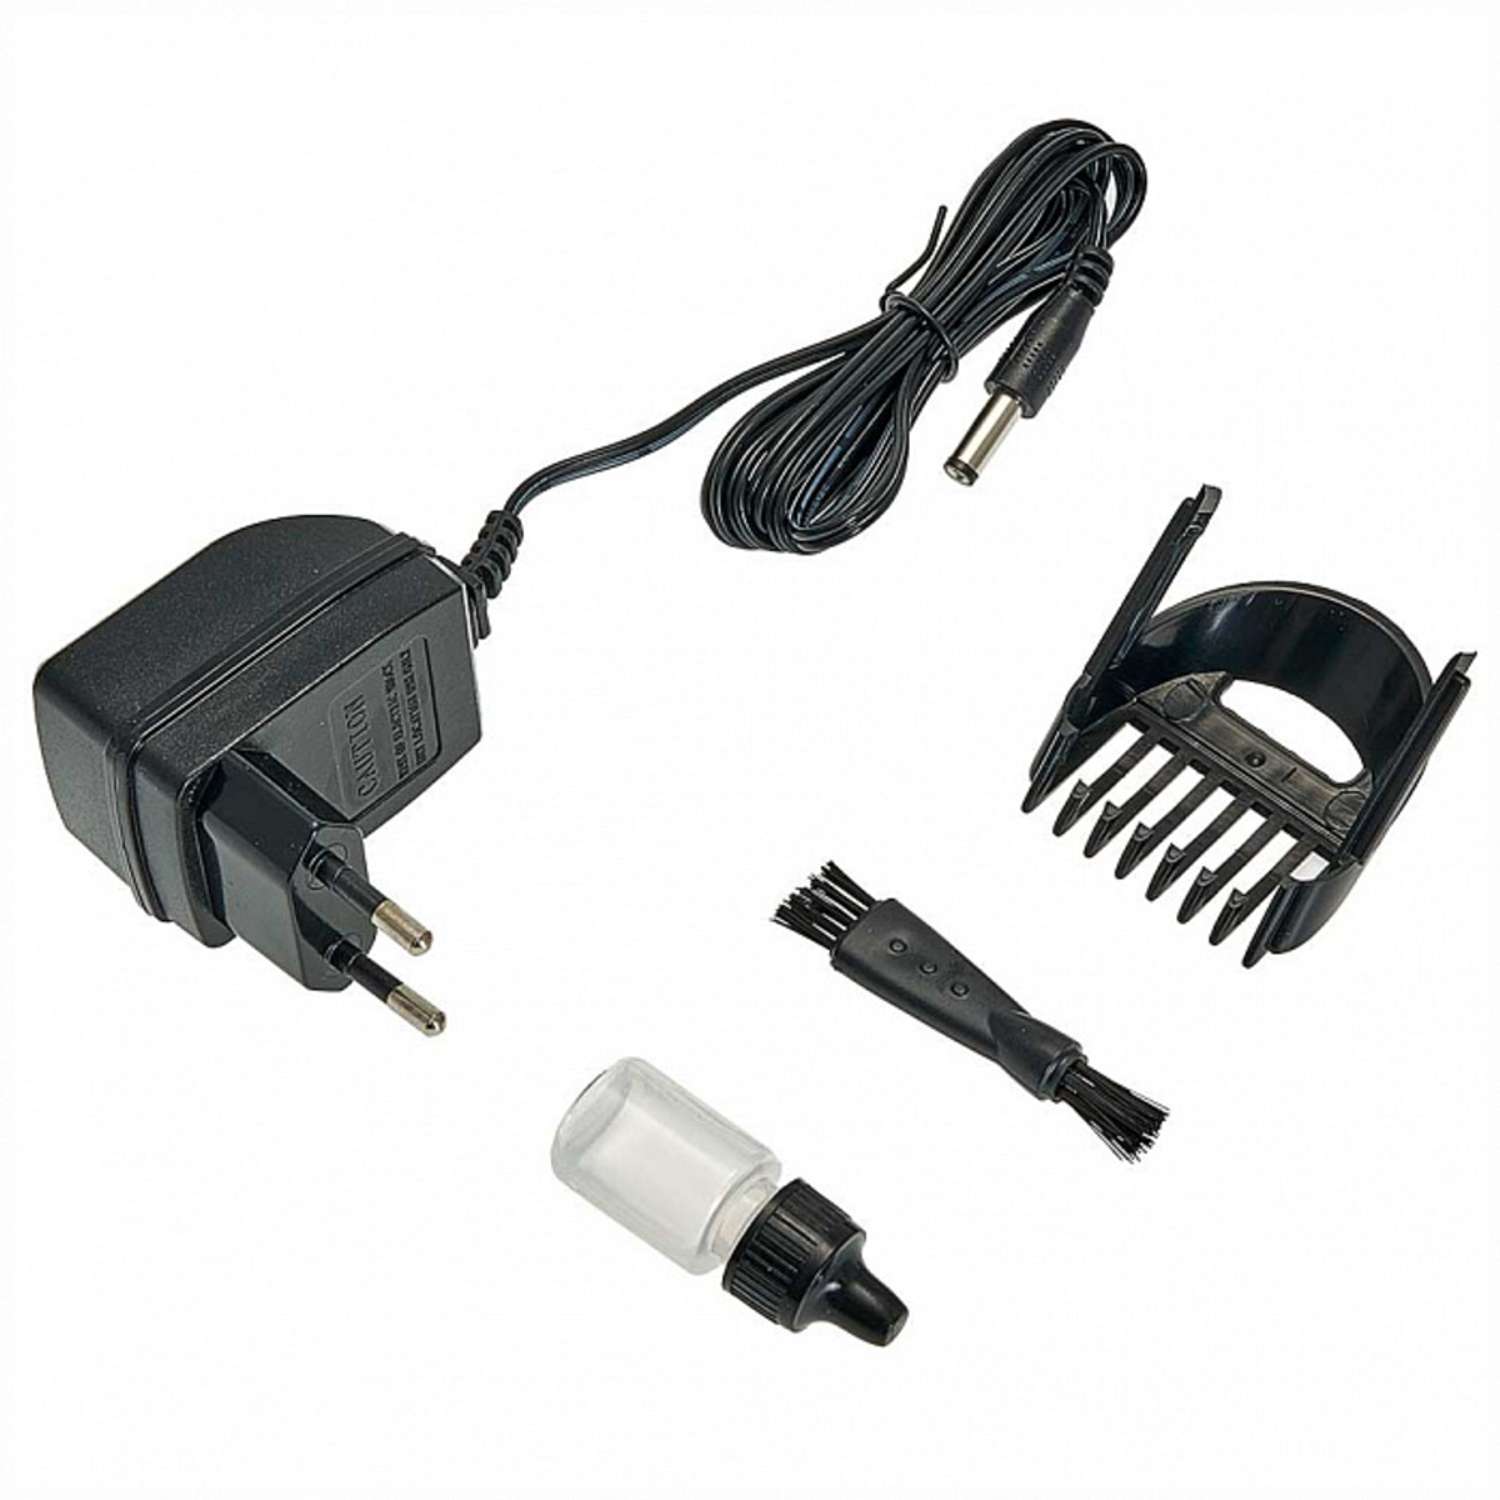 Машинка для стрижки волос Delta DL-4061A черный 3 Вт аккумулятор филировка съемный гребень - фото 2